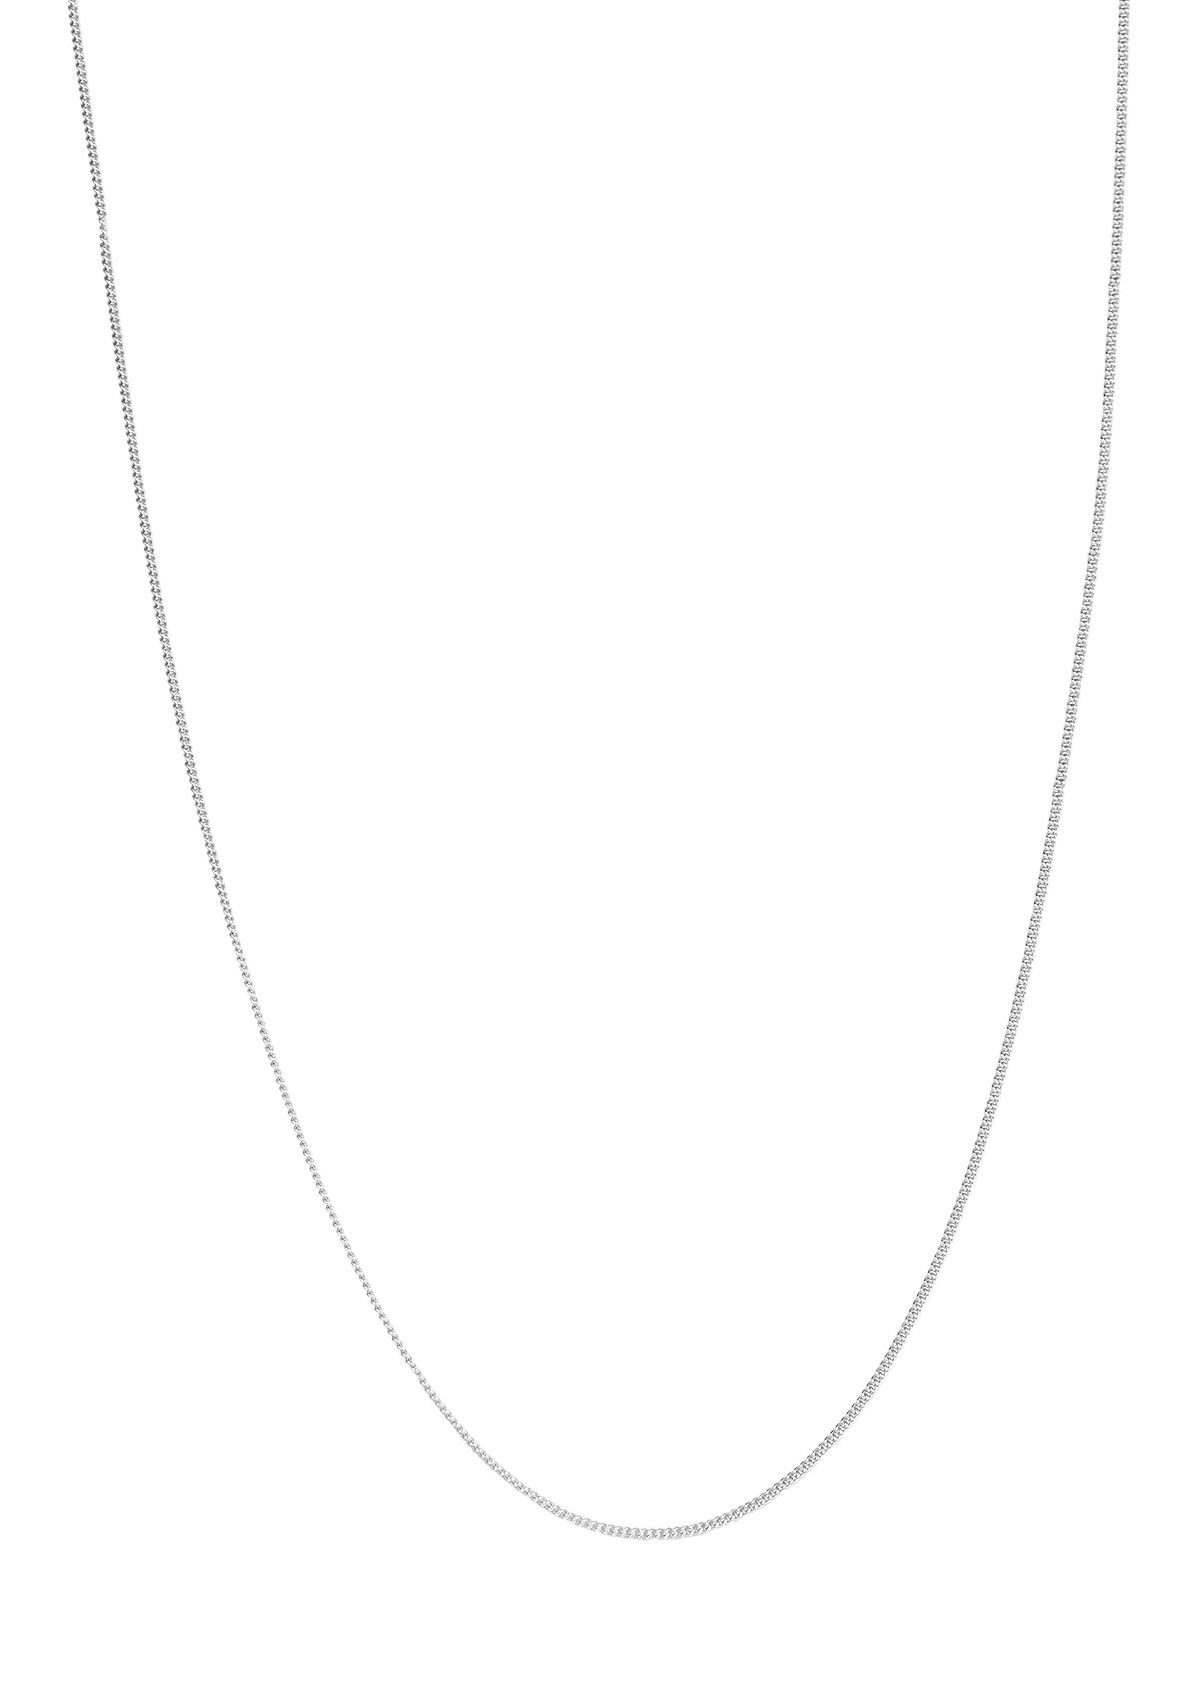 Hey Happiness Silberkette 925 Damen fein strukturiert Vergoldet 18K, Silber Halskette Layer Look zum Kombinieren, hypoallergen